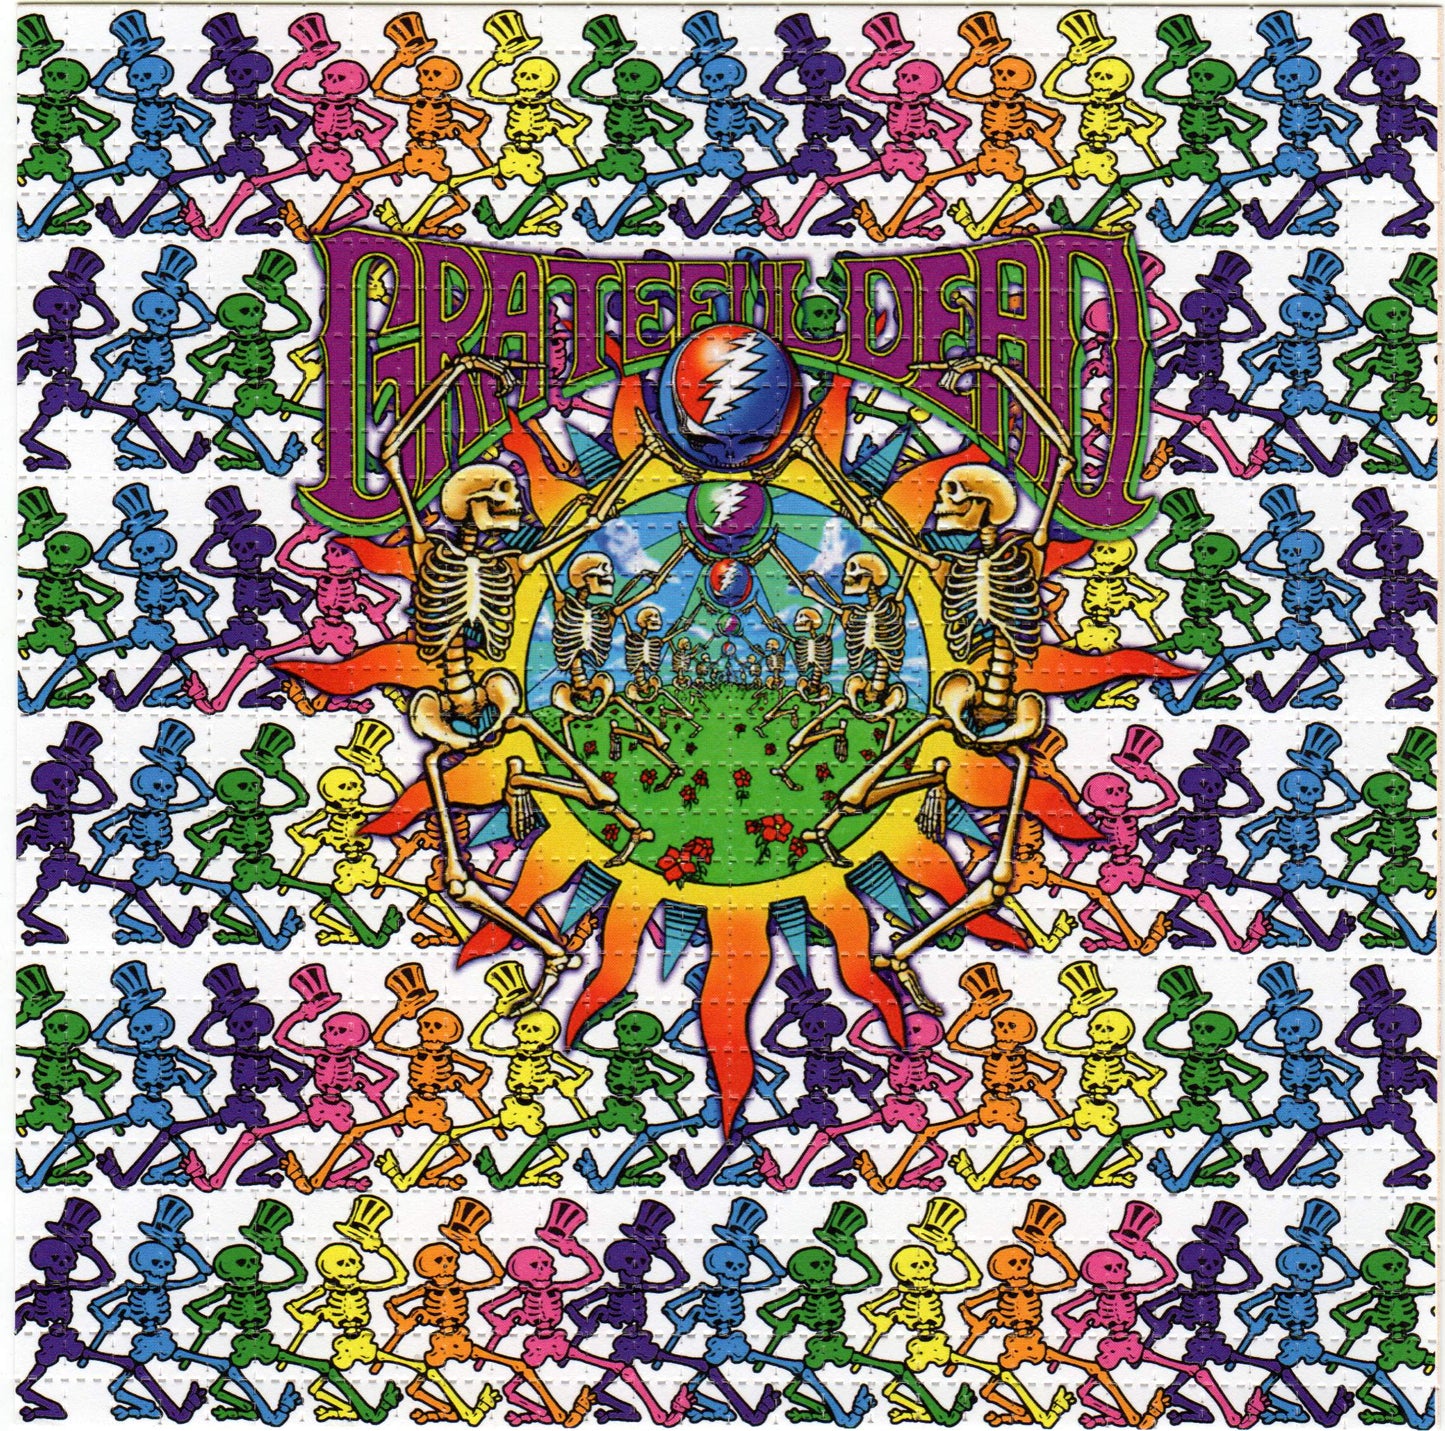 Grateful Skeletons LSD blotter art print